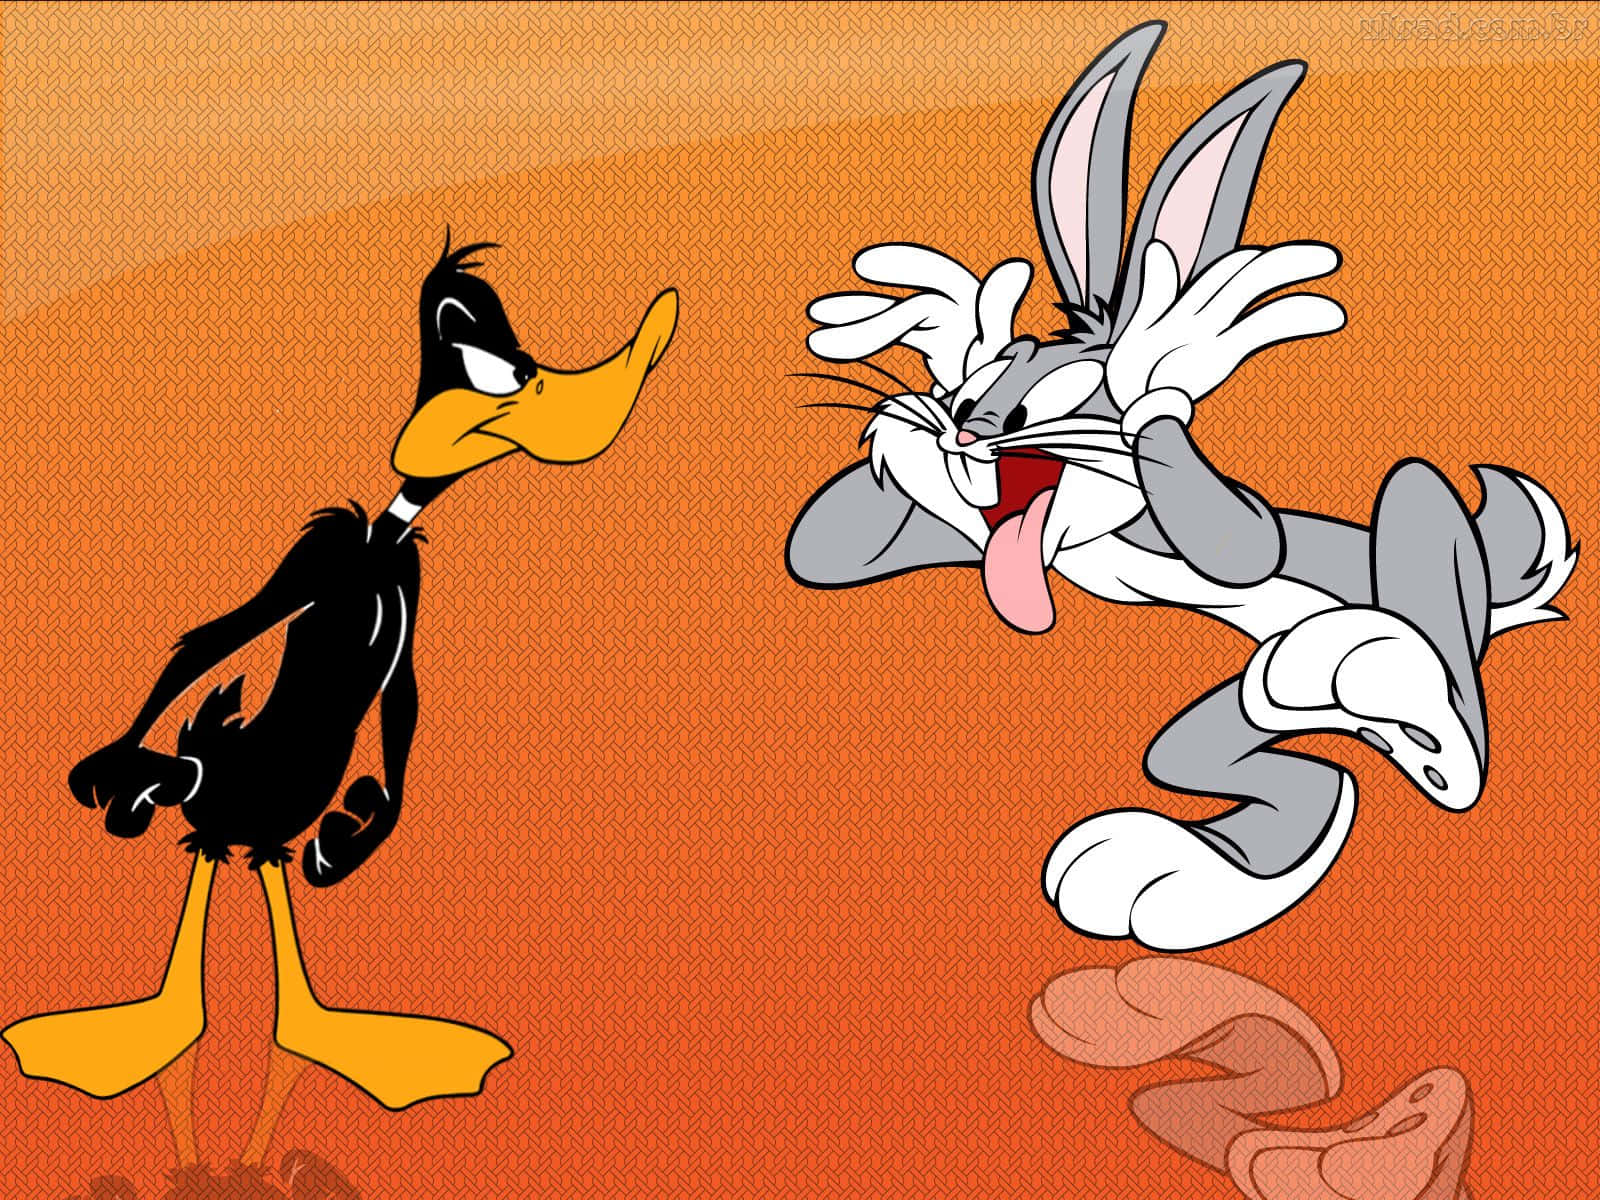 Klassischelooney Tunes Cartoons Mit Bugs Bunny, Daffy Duck Und Dem Rest Der Gang.